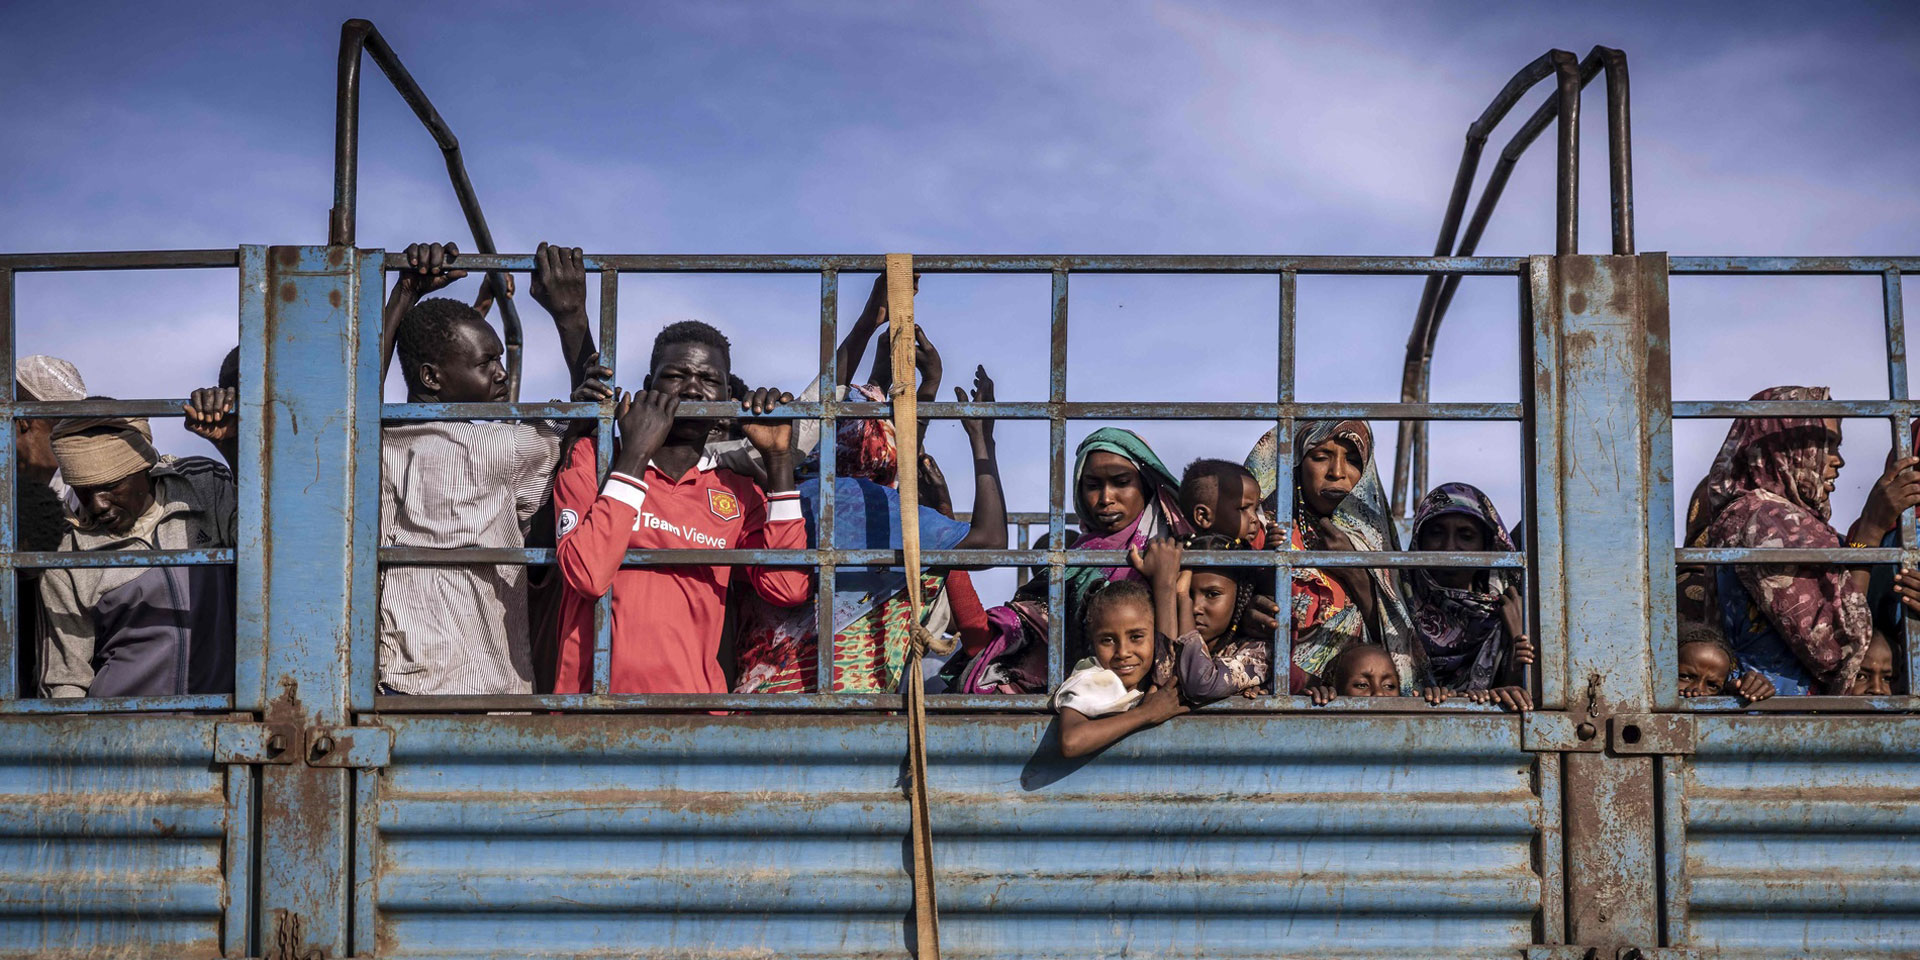 Sudanesische Frauen, Männer und Kinder stehen eng zusammen auf der Ladefläche eines blauen Lastwagens.